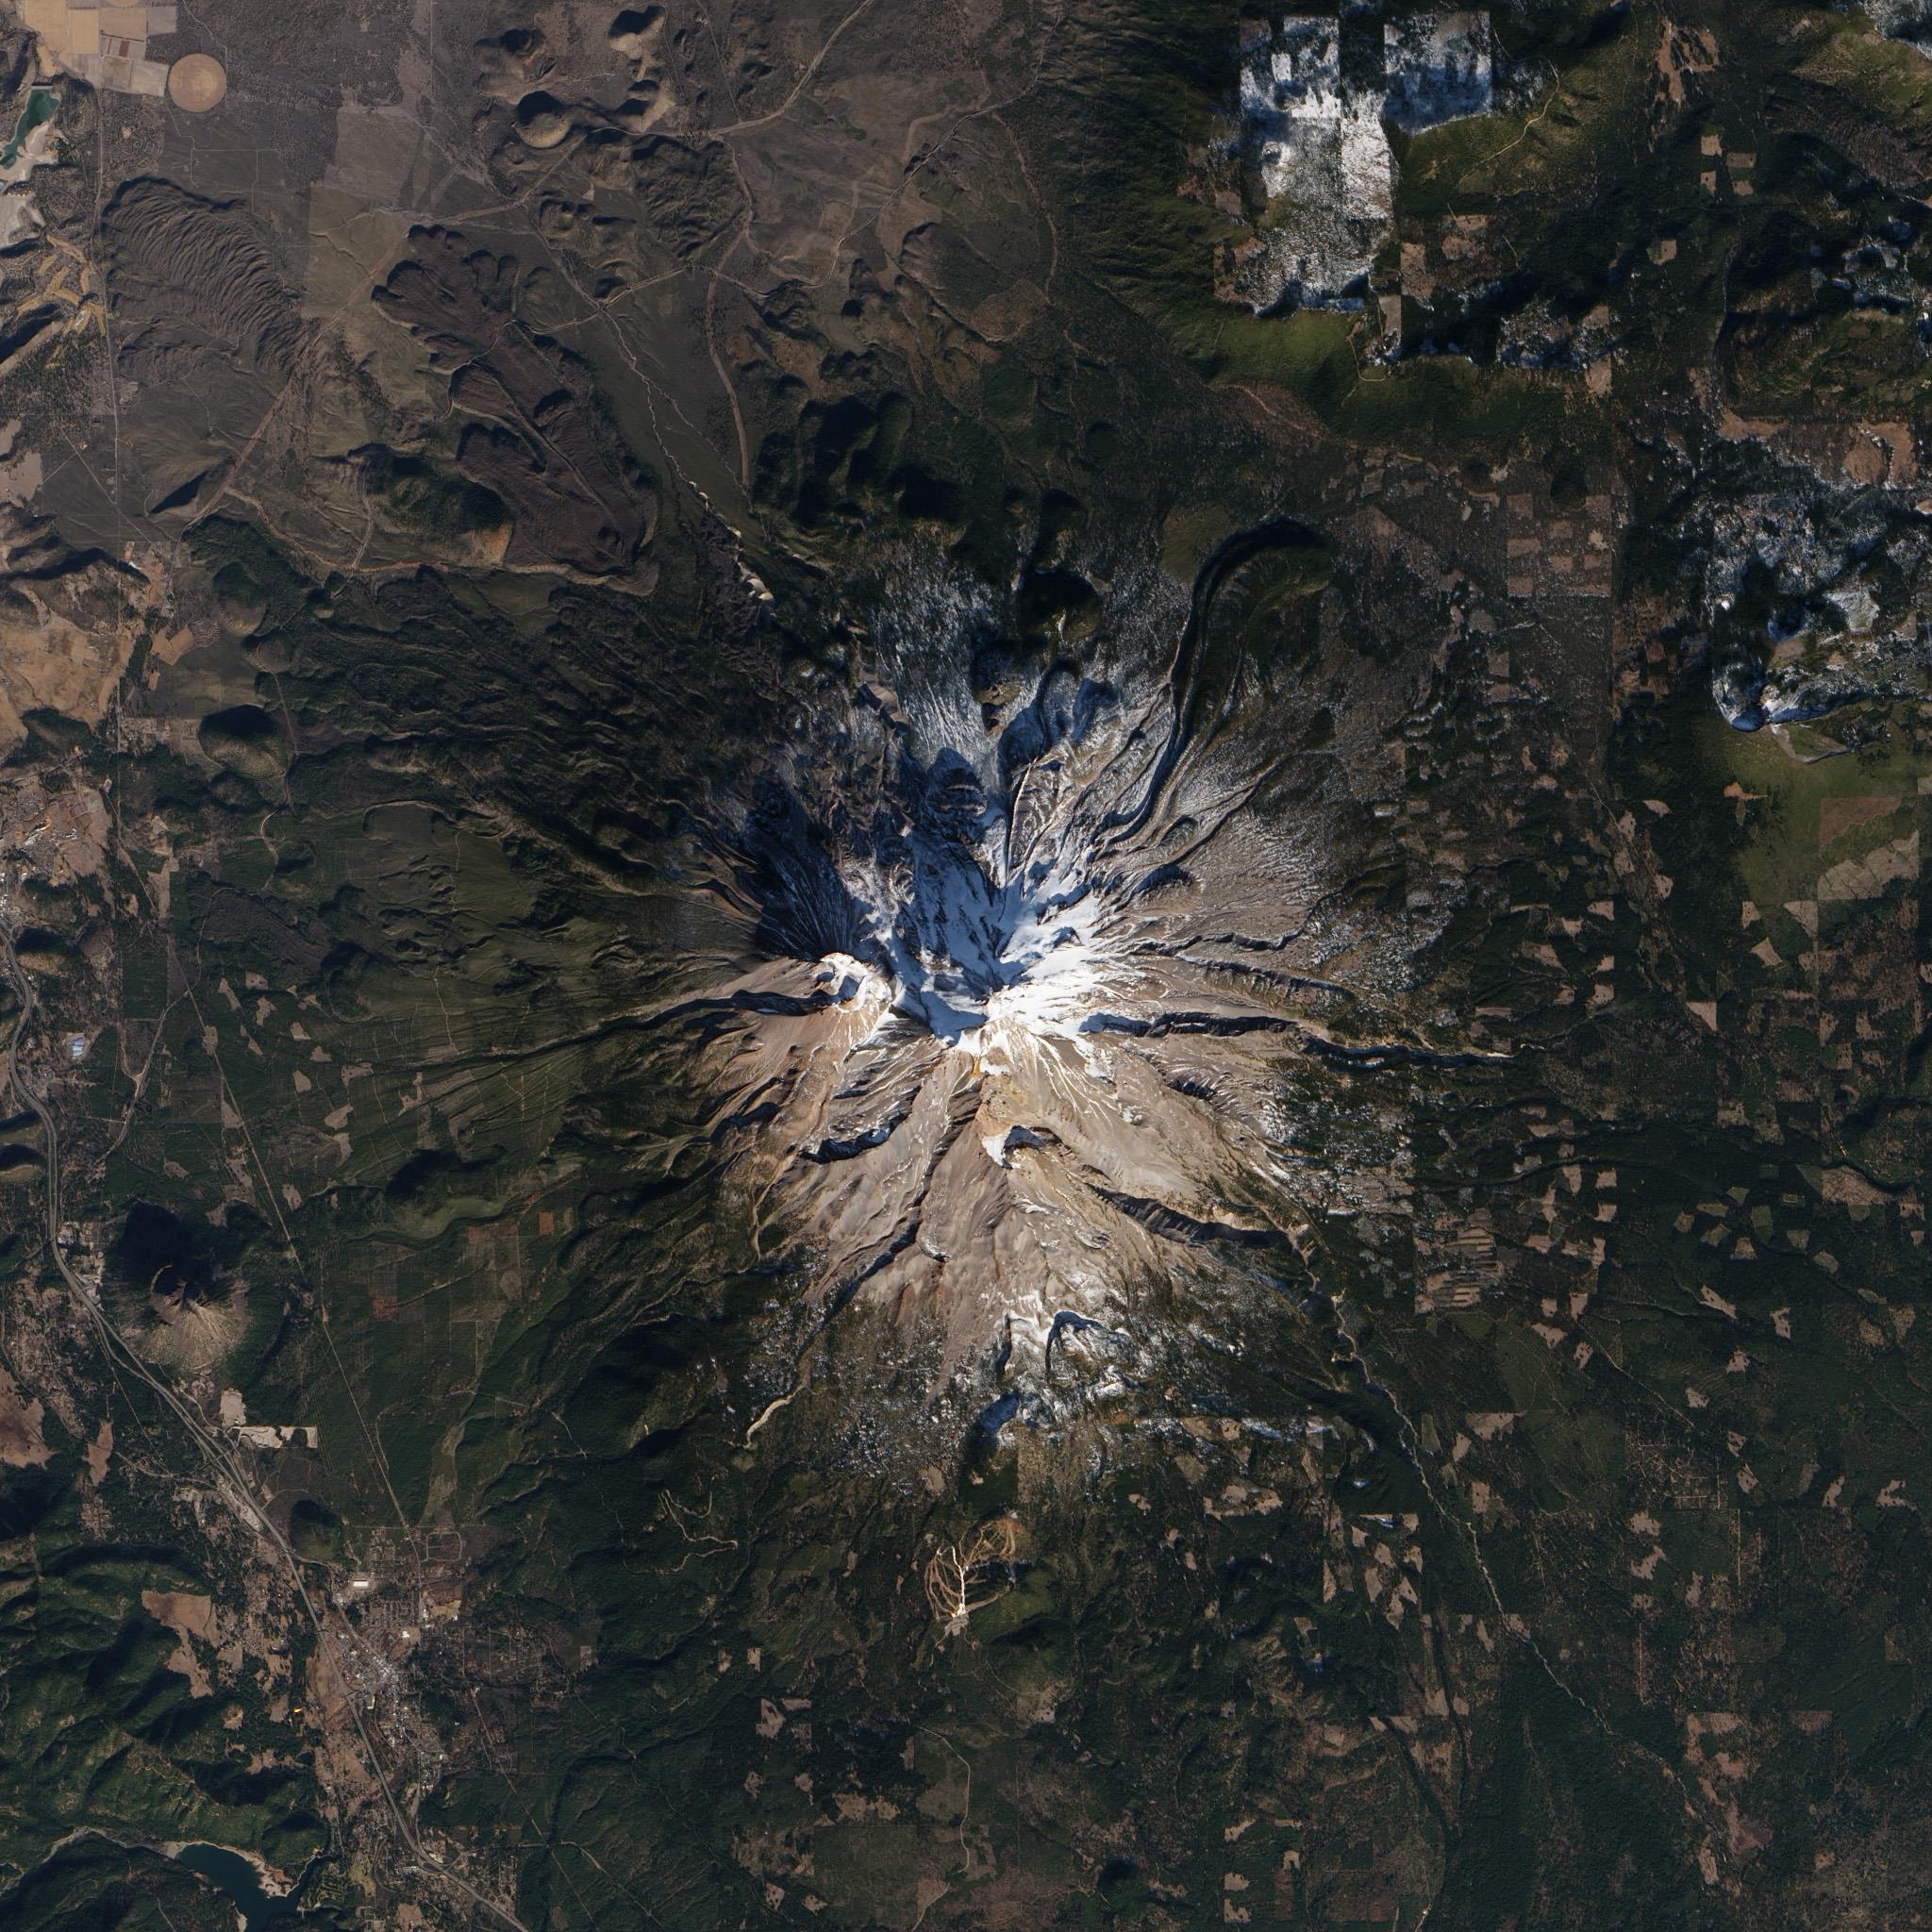 Núi Shasta địa điểm linh thiêng với những câu chuyện bí ẩn